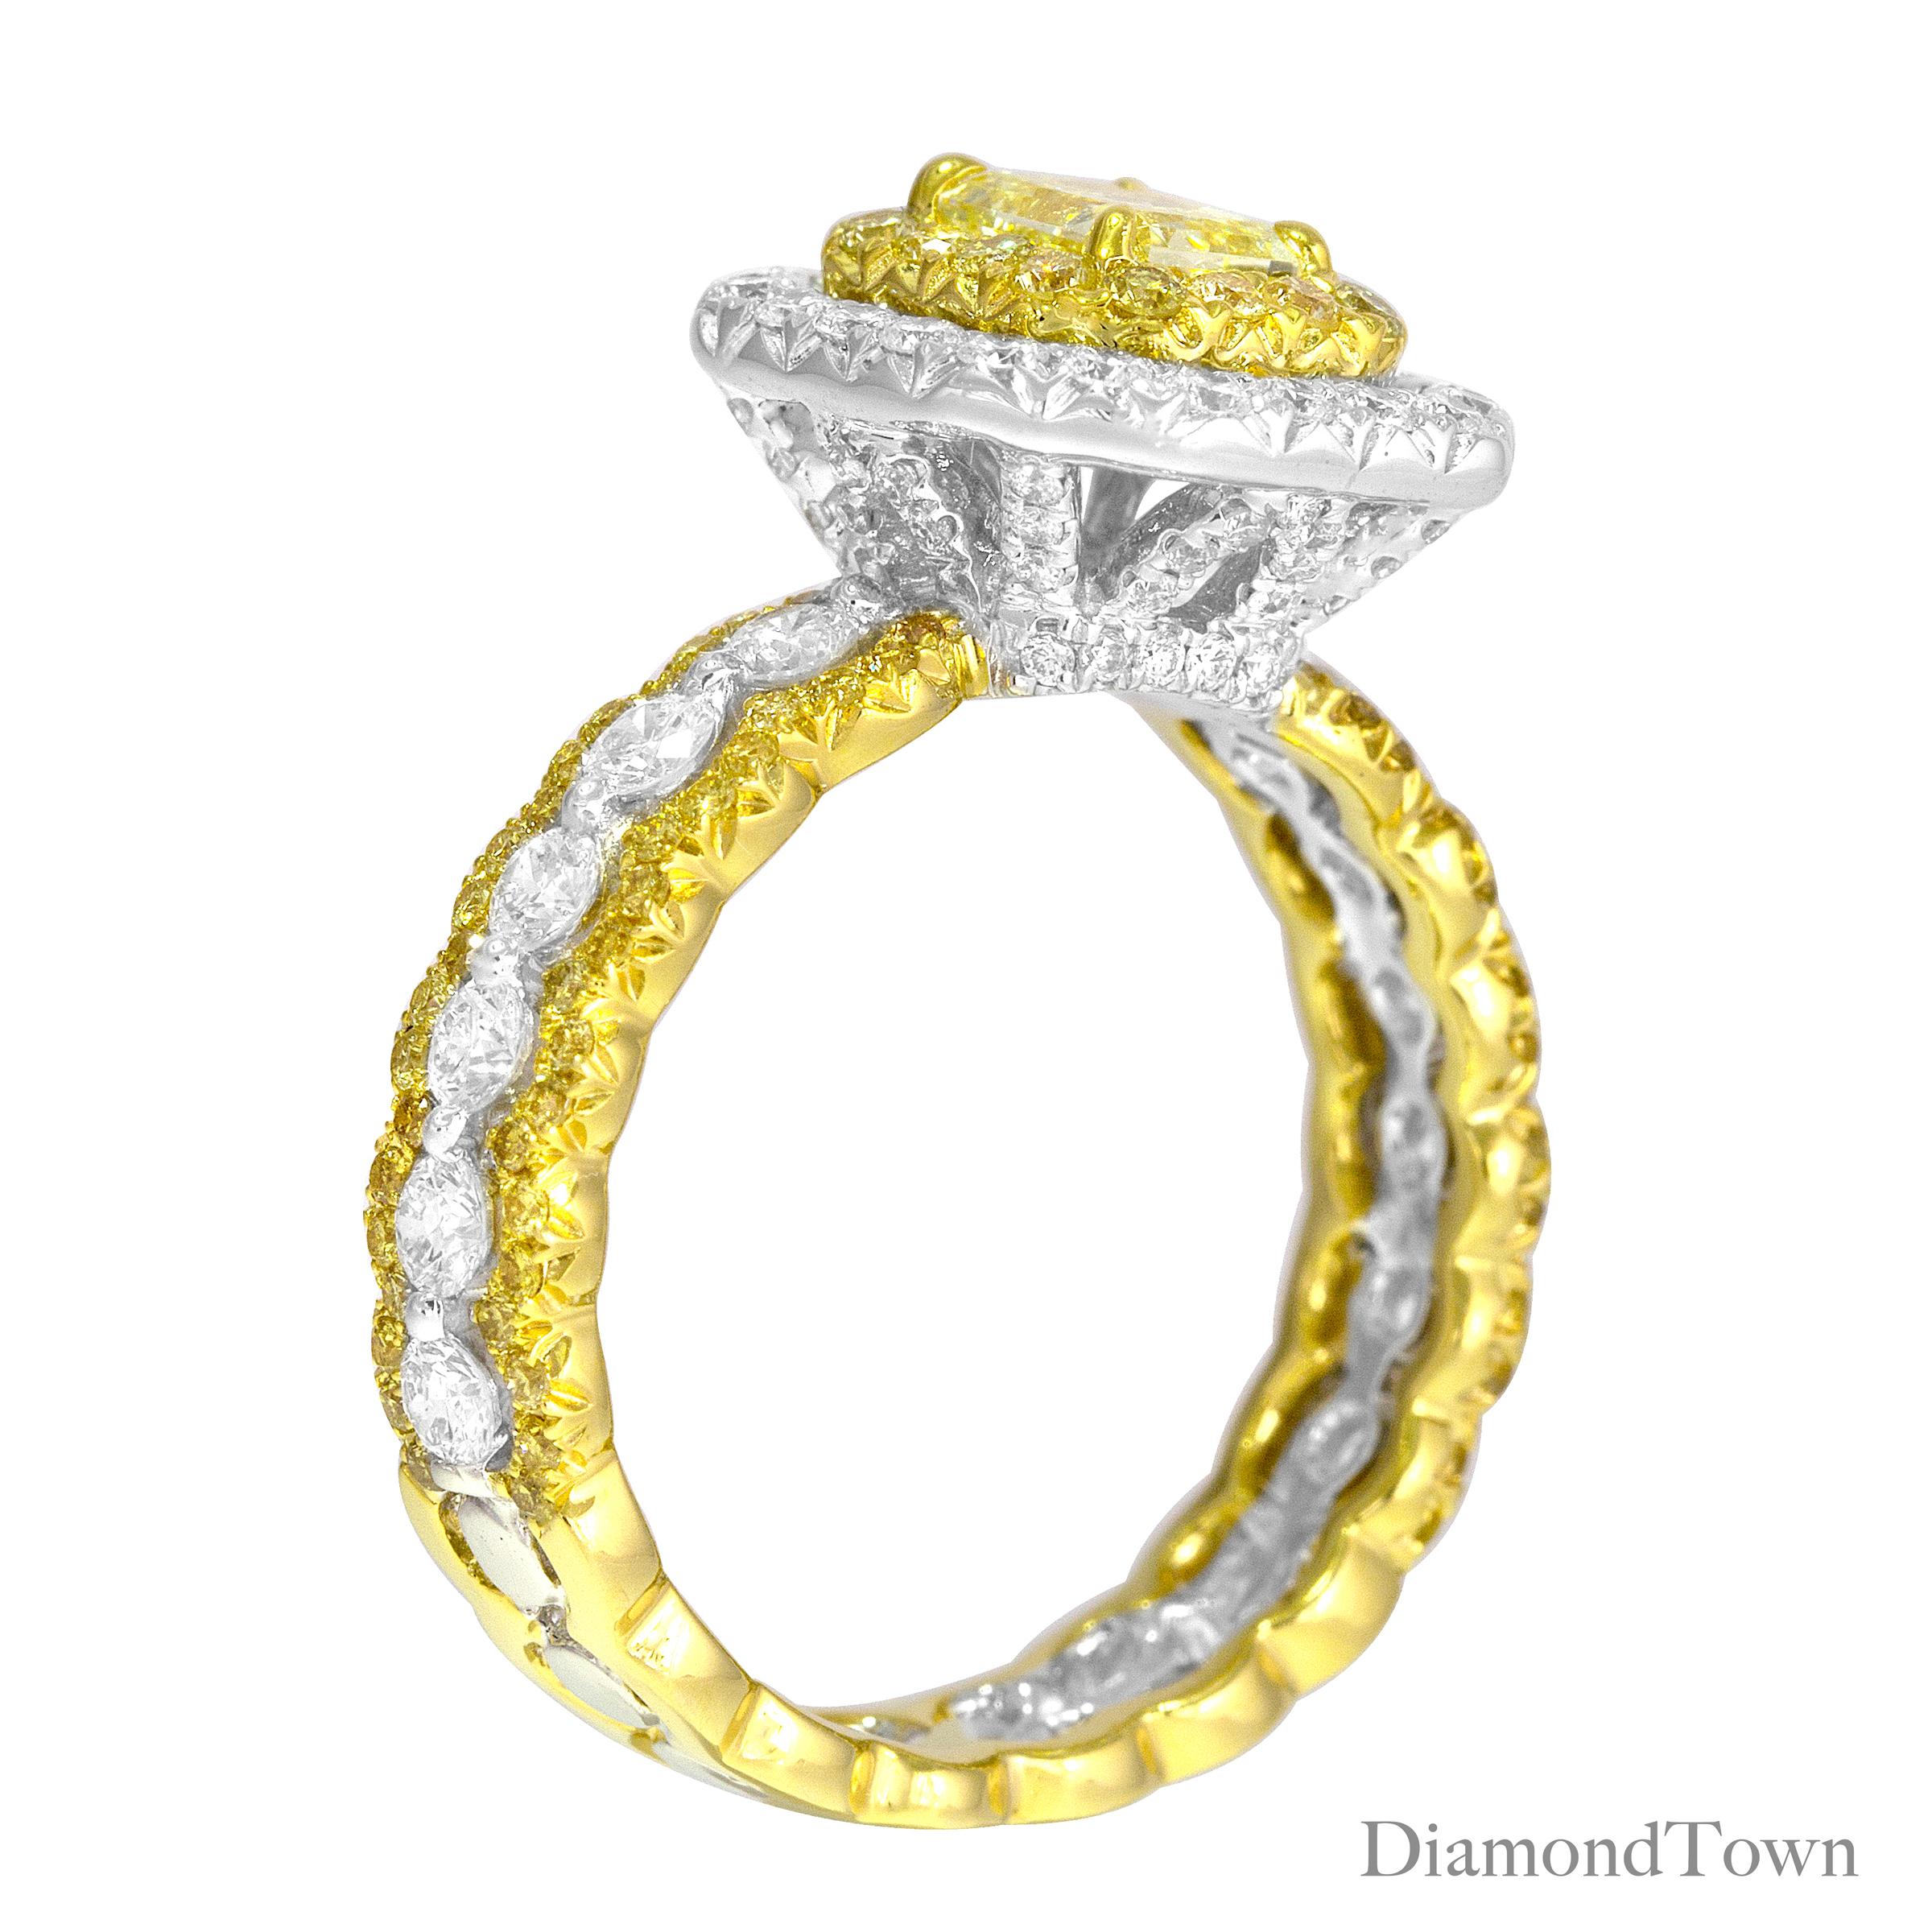 Cette bague captivante met en valeur un diamant certifié GIA de 0,70 carat Natural Fancy Yellow Radiant Cut en son centre, élégamment entouré d'un double halo composé de diamants ronds jaunes et de diamants ronds blancs. L'ensemble de la pièce est